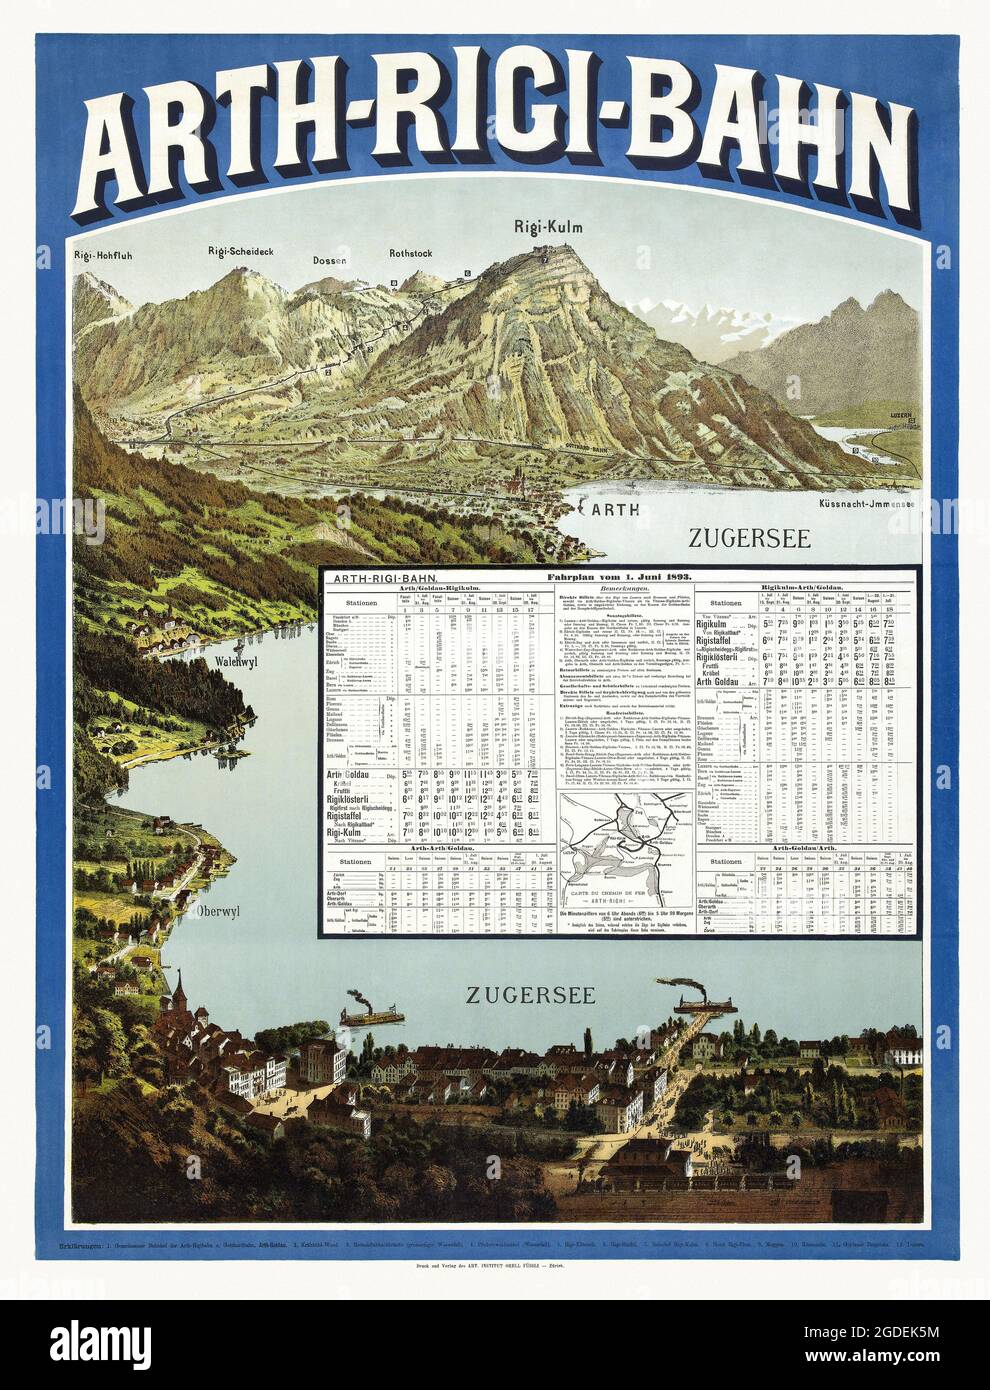 Arth-Rigi-Bahn. Fahrplan vom 1 giugno 1892 di Orell-Füssli-Verlag. Poster vintage restaurato pubblicato nel 1892 in Svizzera. Foto Stock